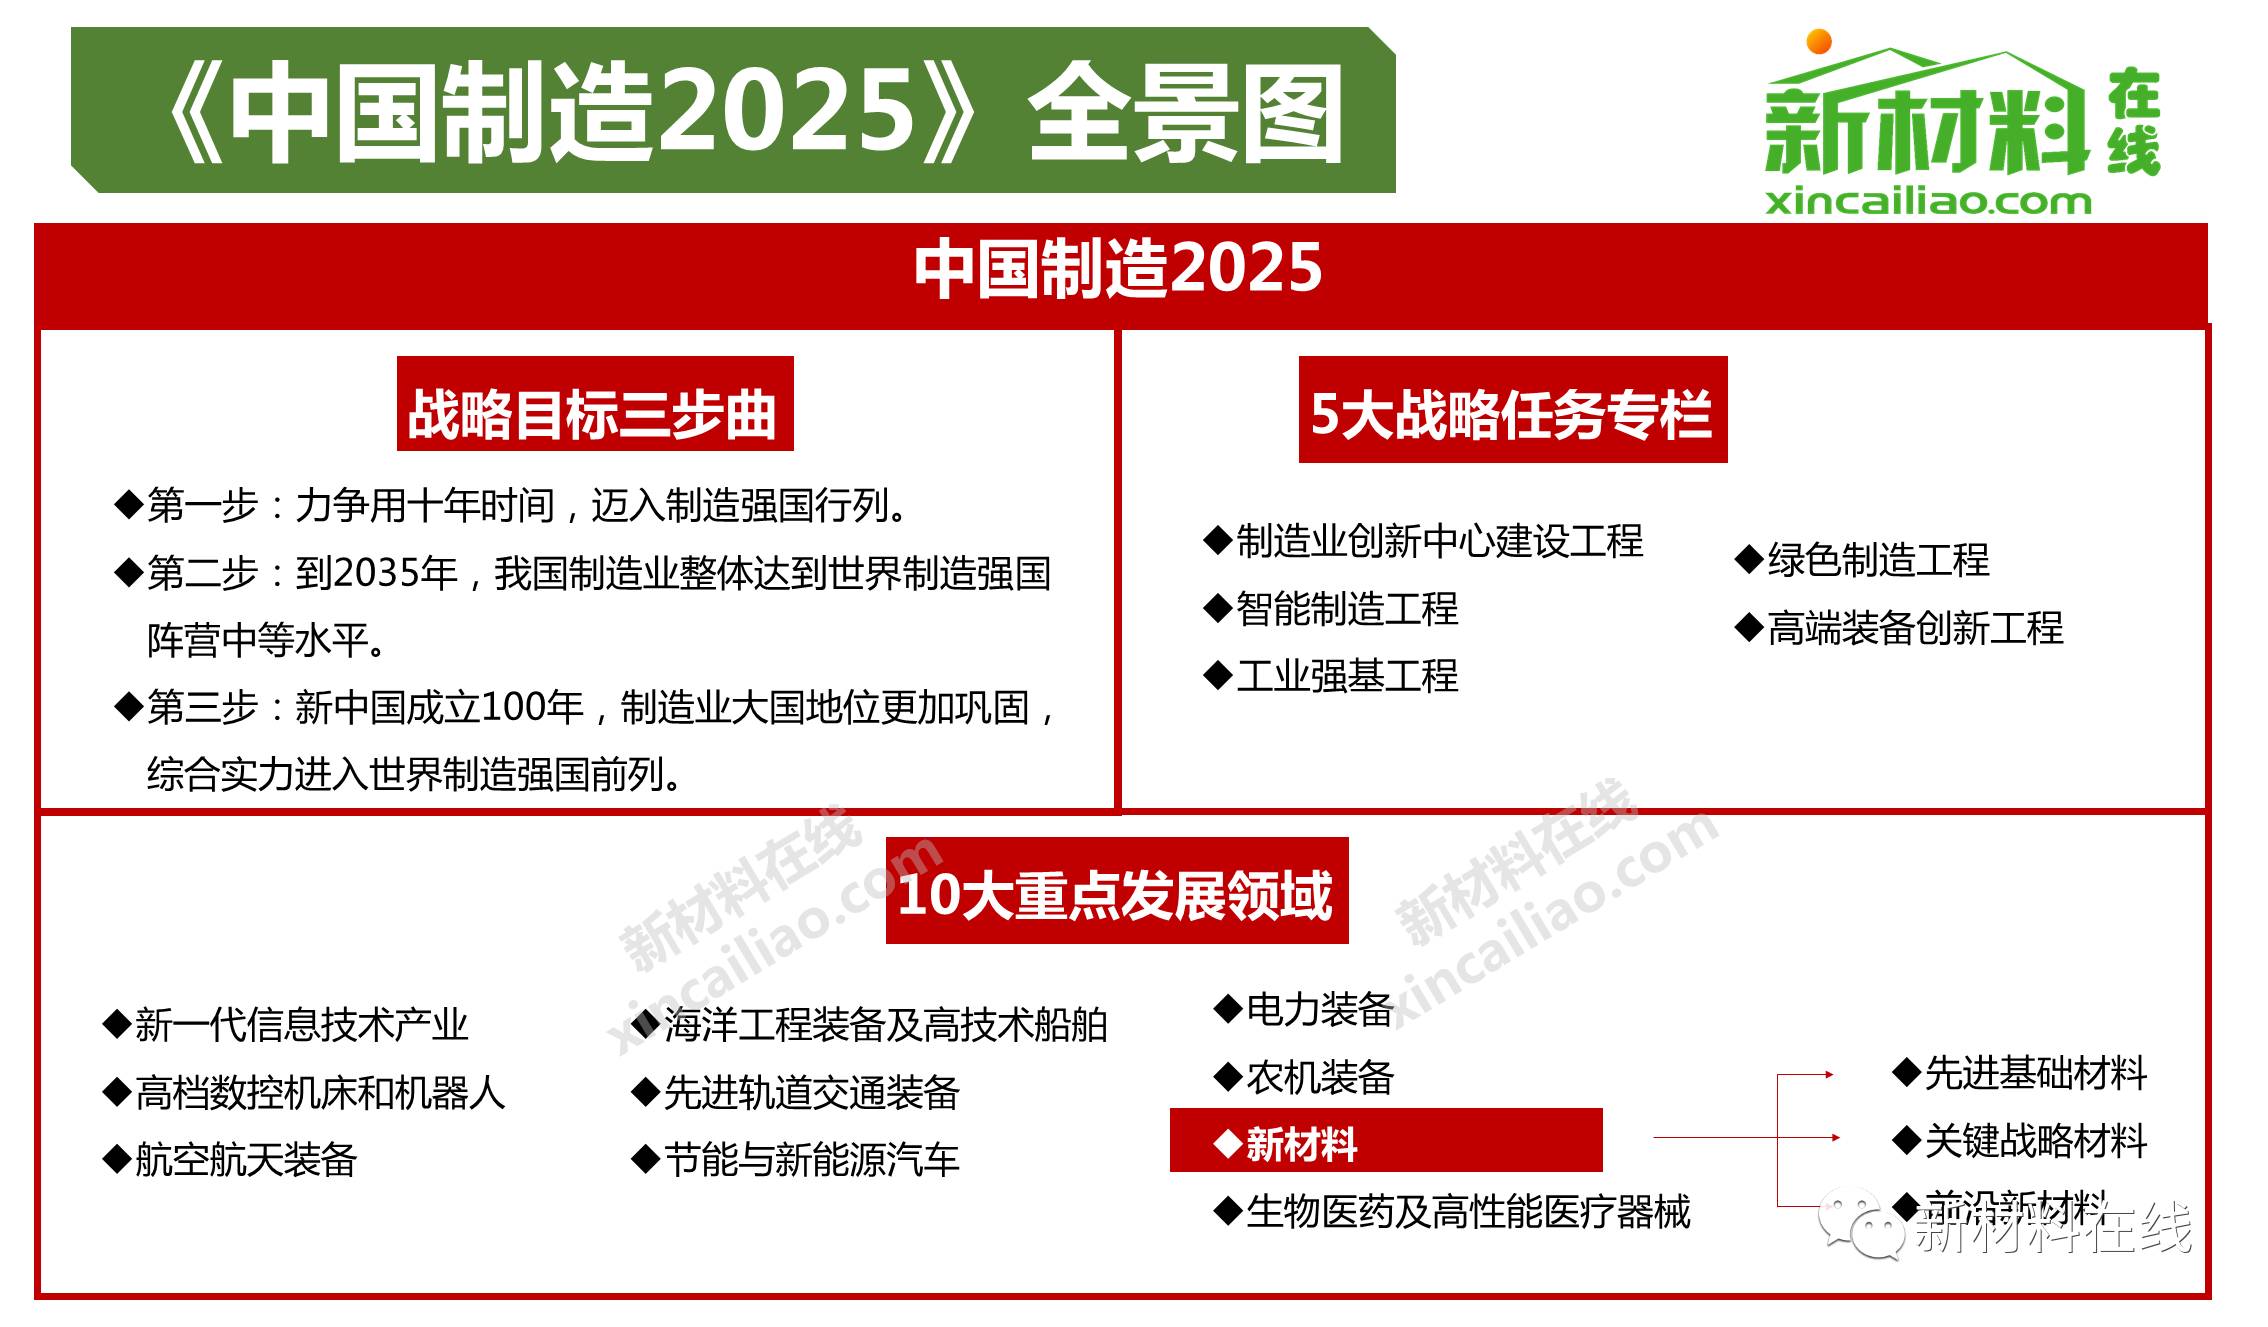 【必收藏】八大全景图深入解读中国制造2025到一带一路新材料利好